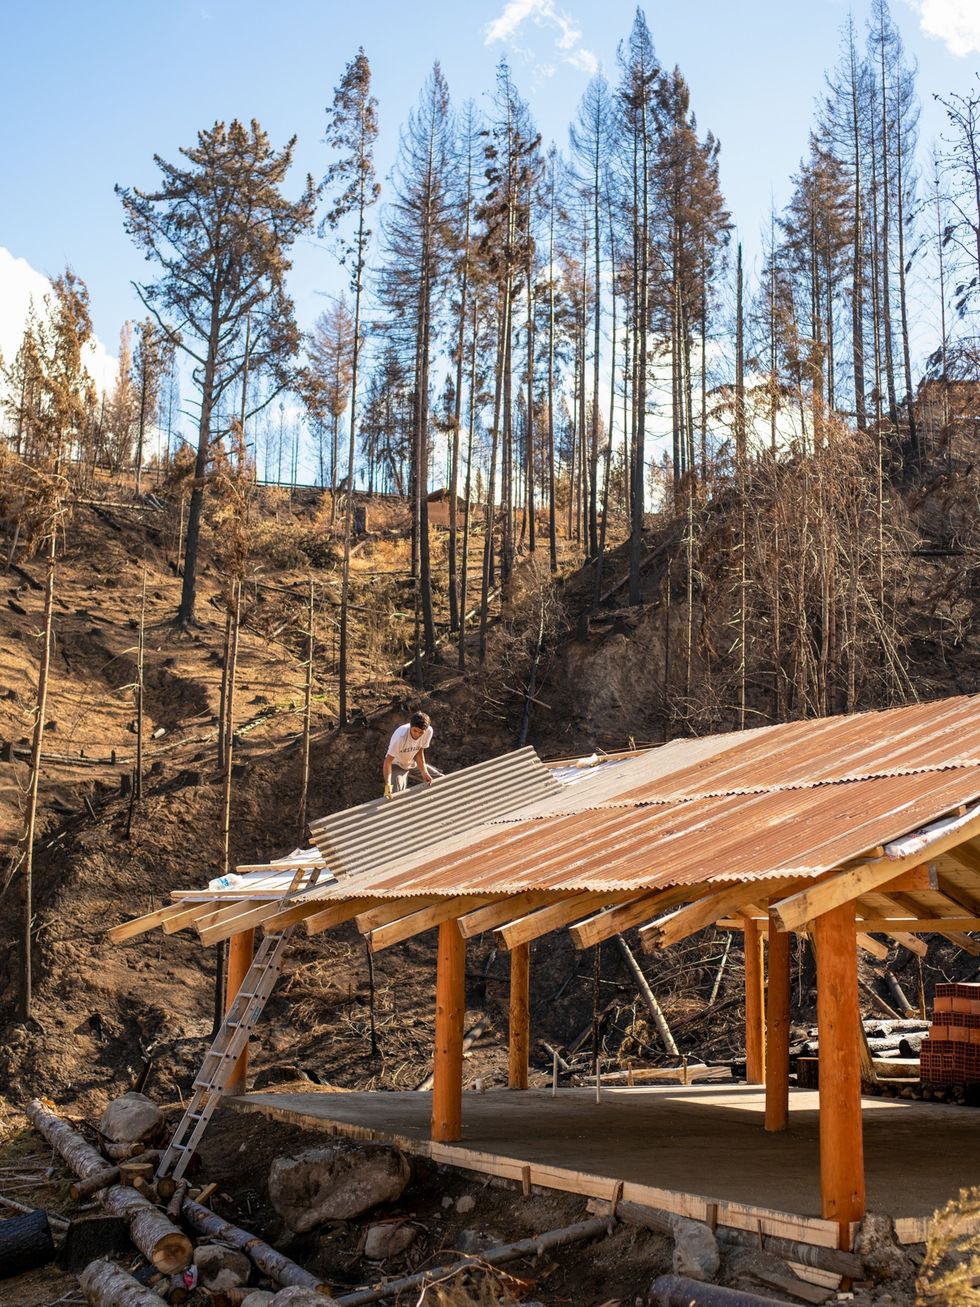 In Lago Puelo Argentini brengt een bouwvakker plaatmateriaal aan op het dak van een huis dat wordt hersteld Het huis staat op een voormalige dennenplantage die tijdens de bosbrand van 9 maart 2021 tot de grond toe afbrandde